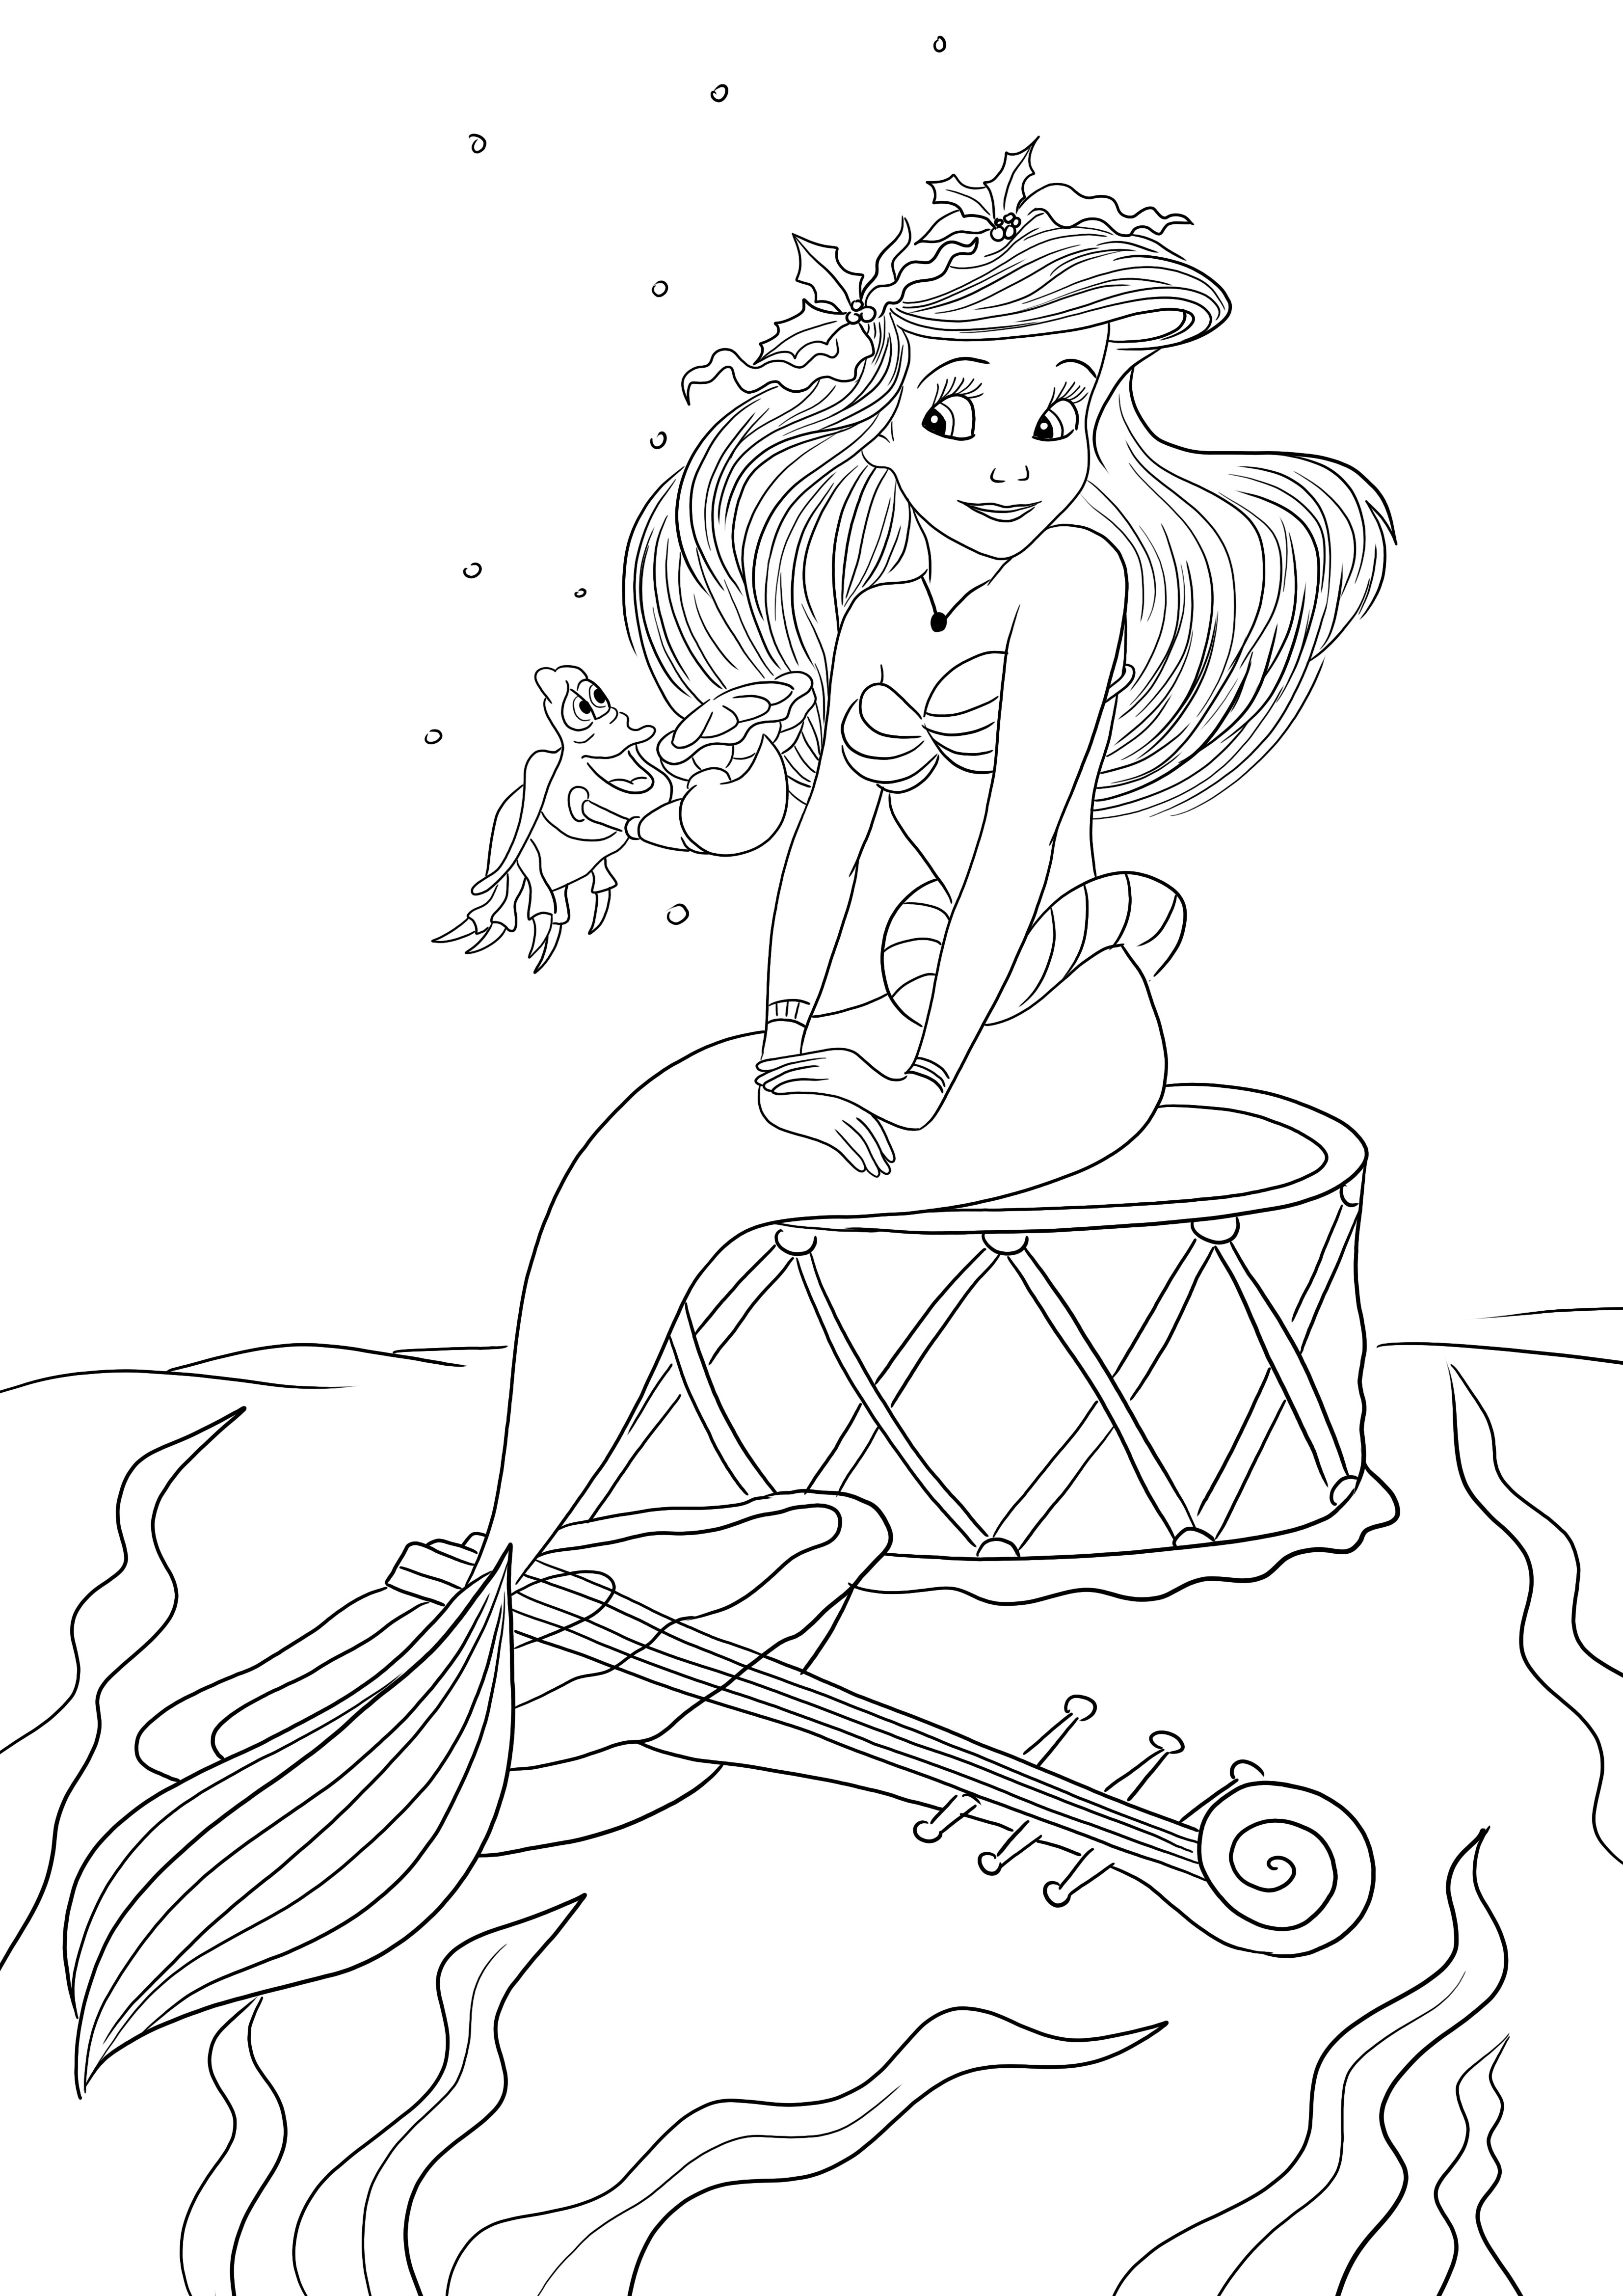 Ücretsiz yazdırma veya indirme sayfası için Deniz Kızı Ariel'in Boyaması